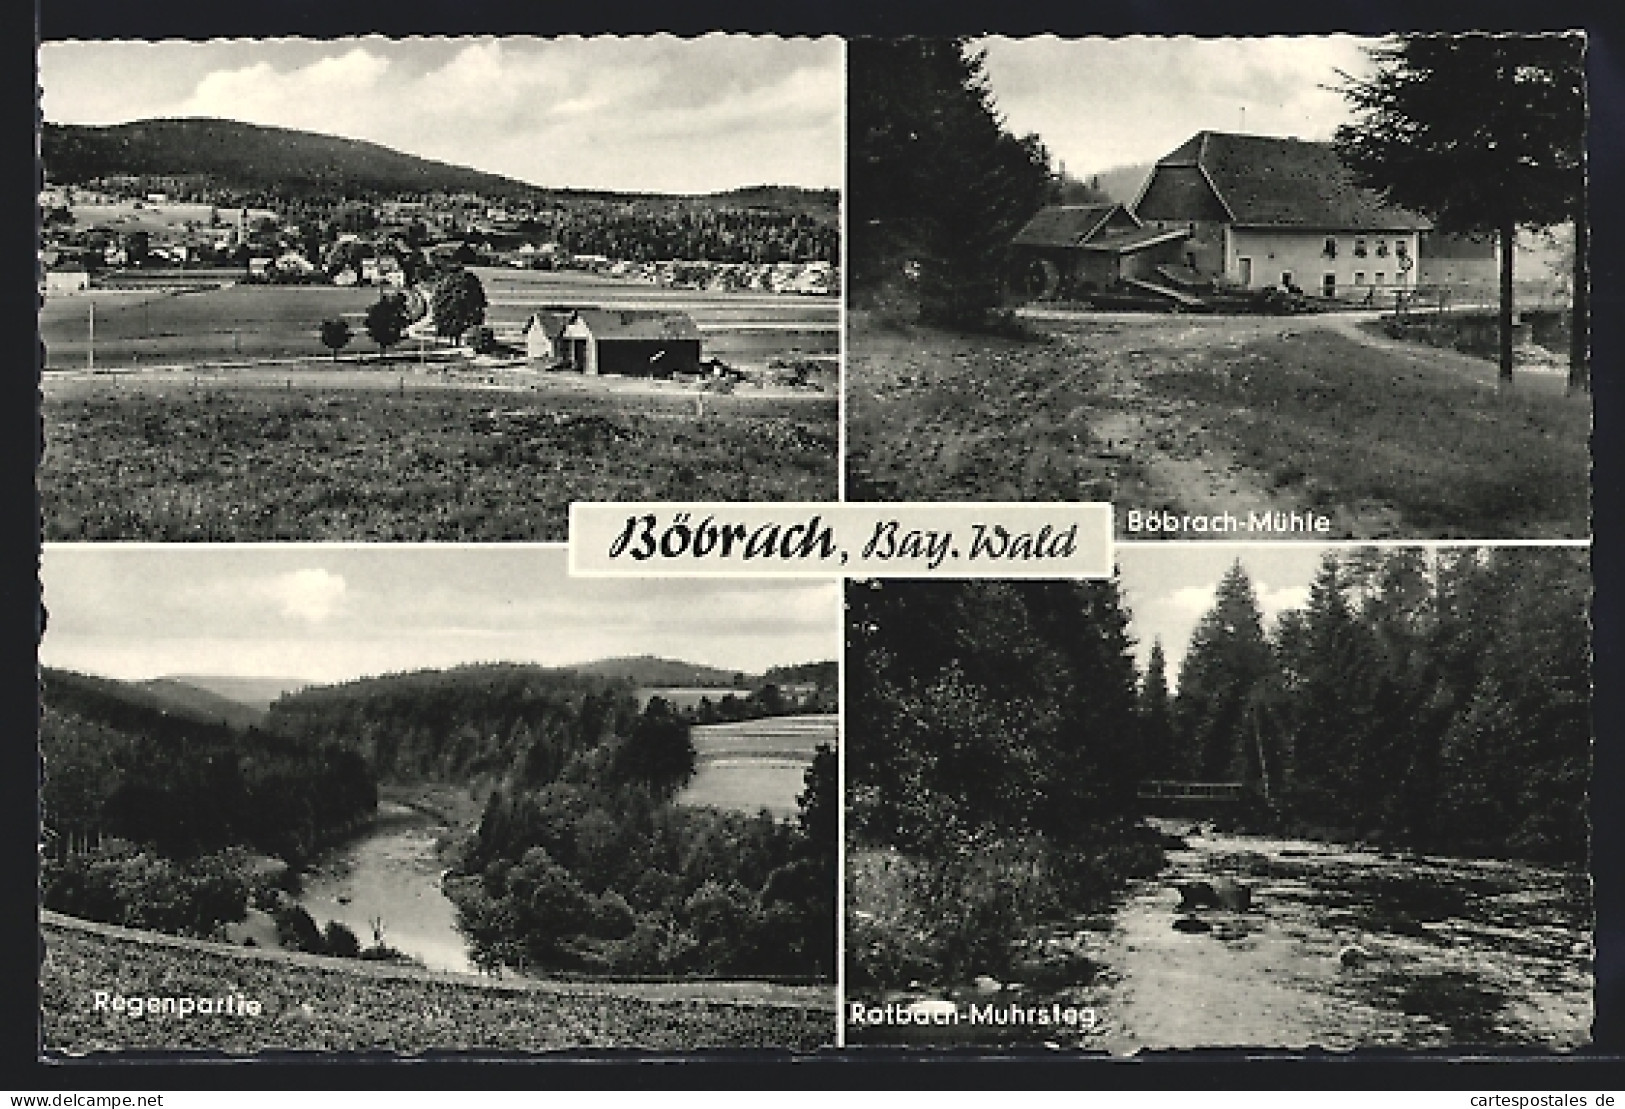 AK Böbrach /Bay. Wald, Böbrach-Mühle, Regenpartie Und Rotbach-Muhrsteg  - Regen